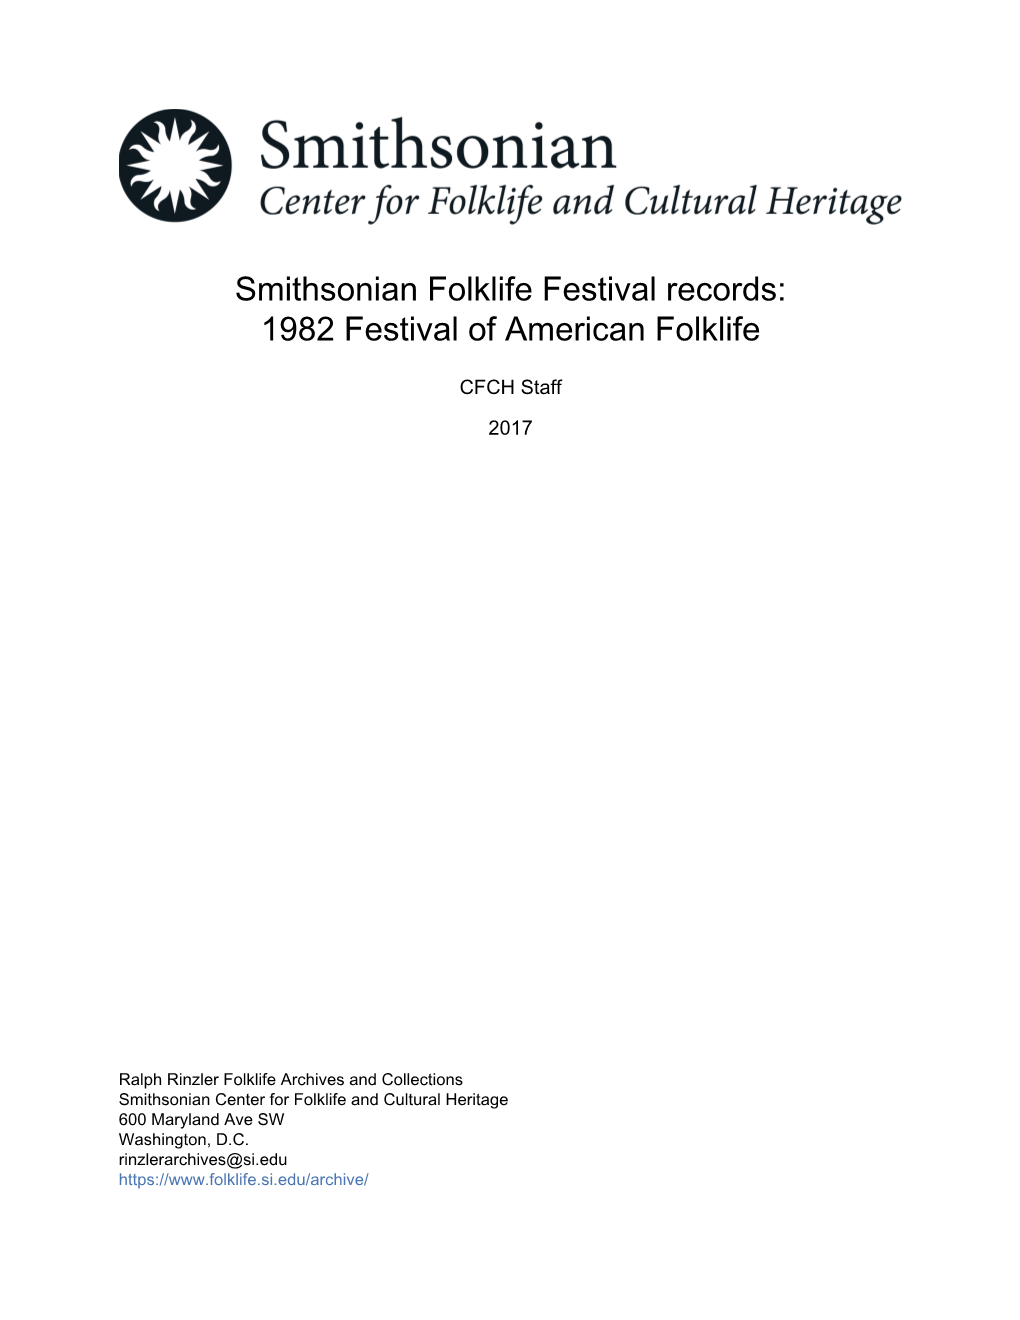 1982 Festival of American Folklife